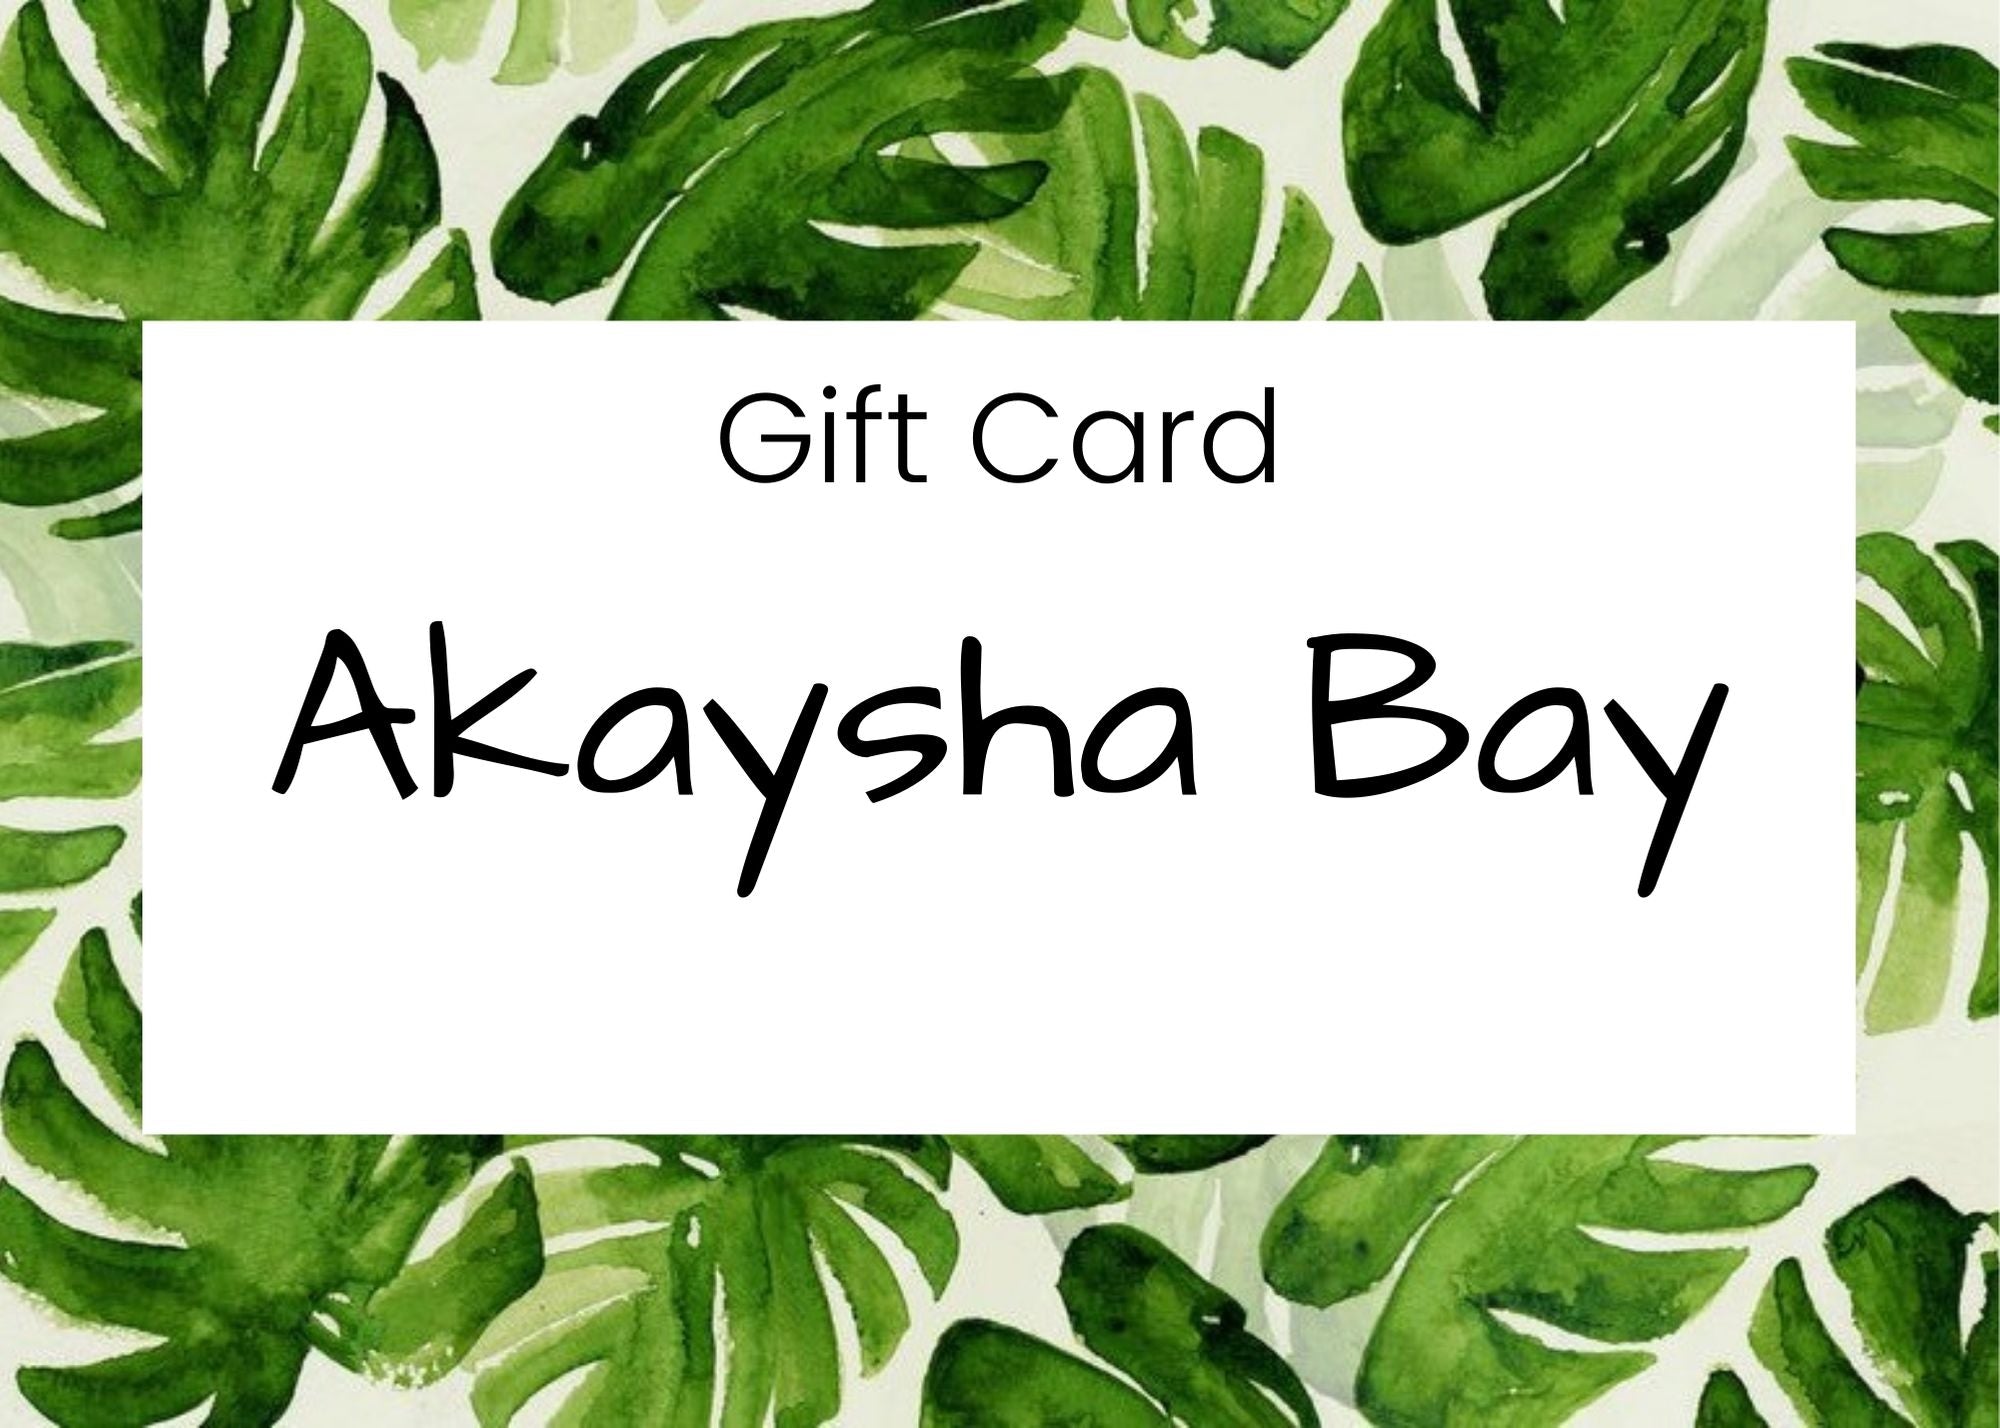 Akaysha Bay Gift Card